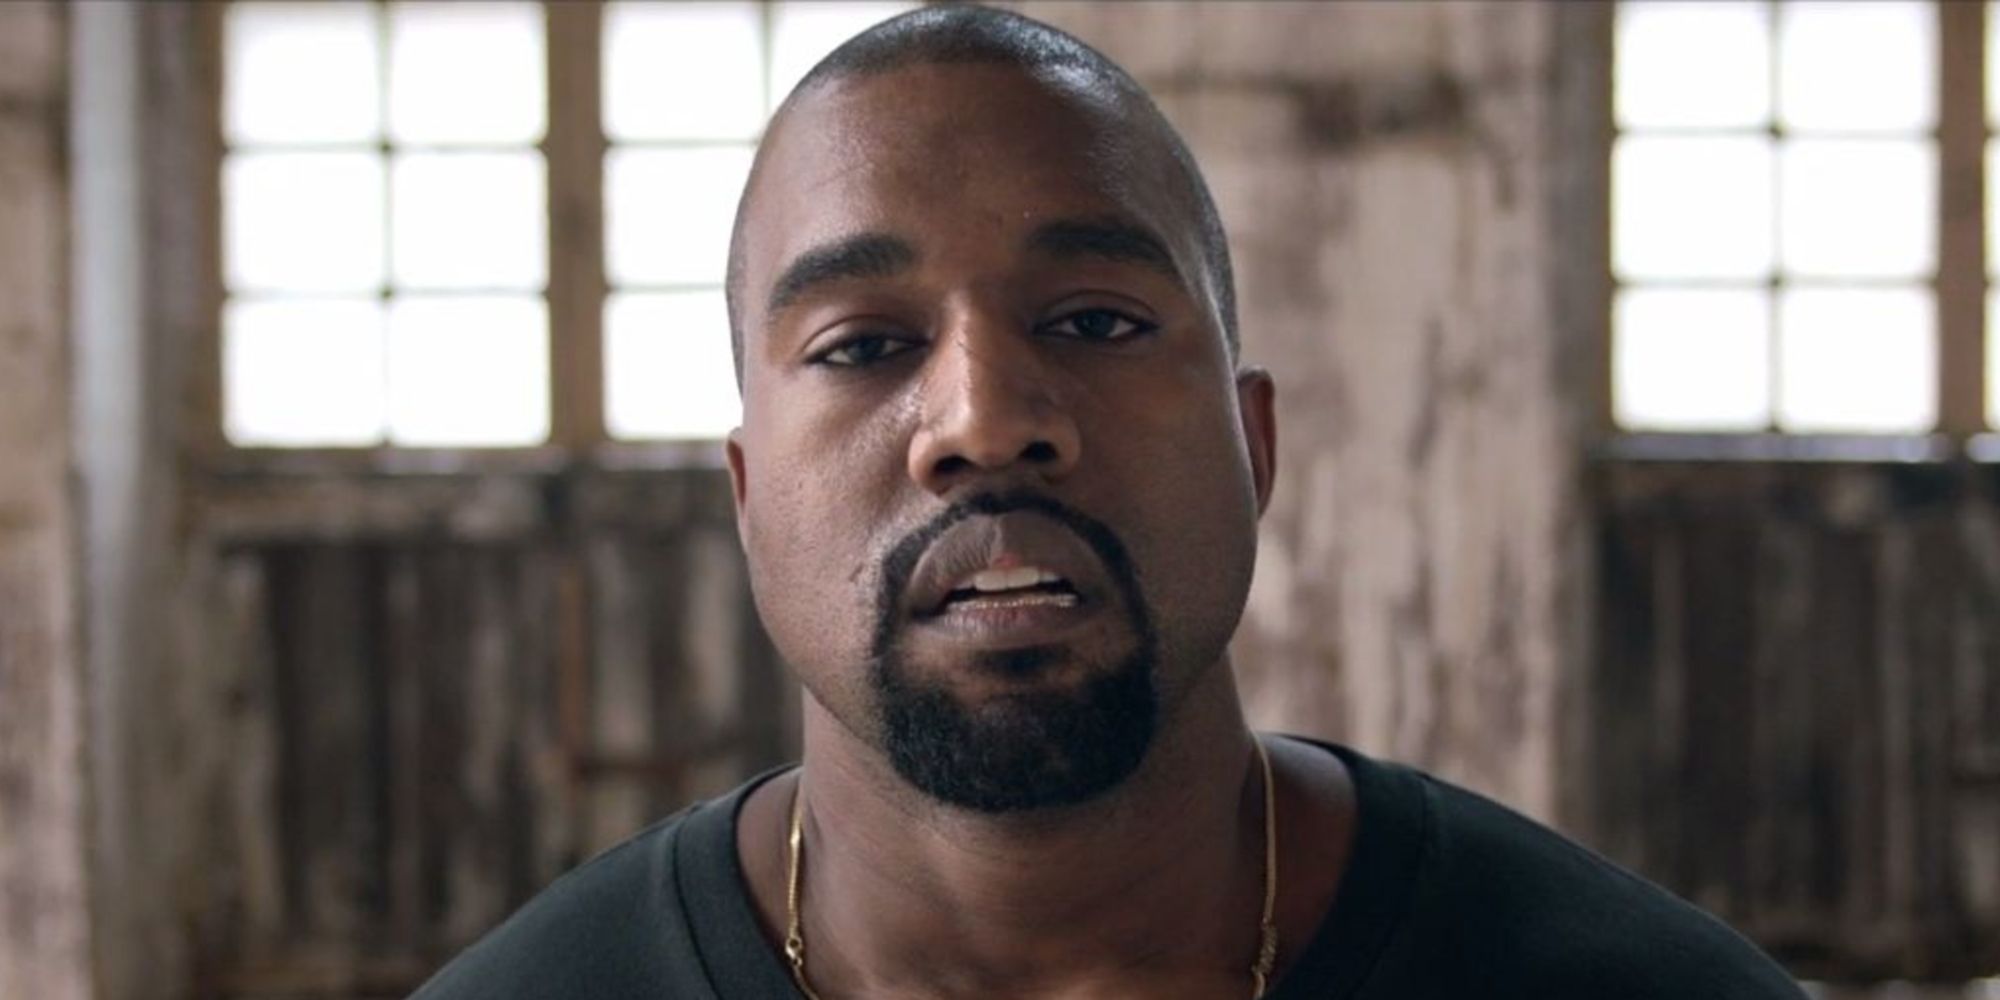 Cómo se siente Kanye West sobre el divorcio ‘asfixiante’ de Kim Kardashian